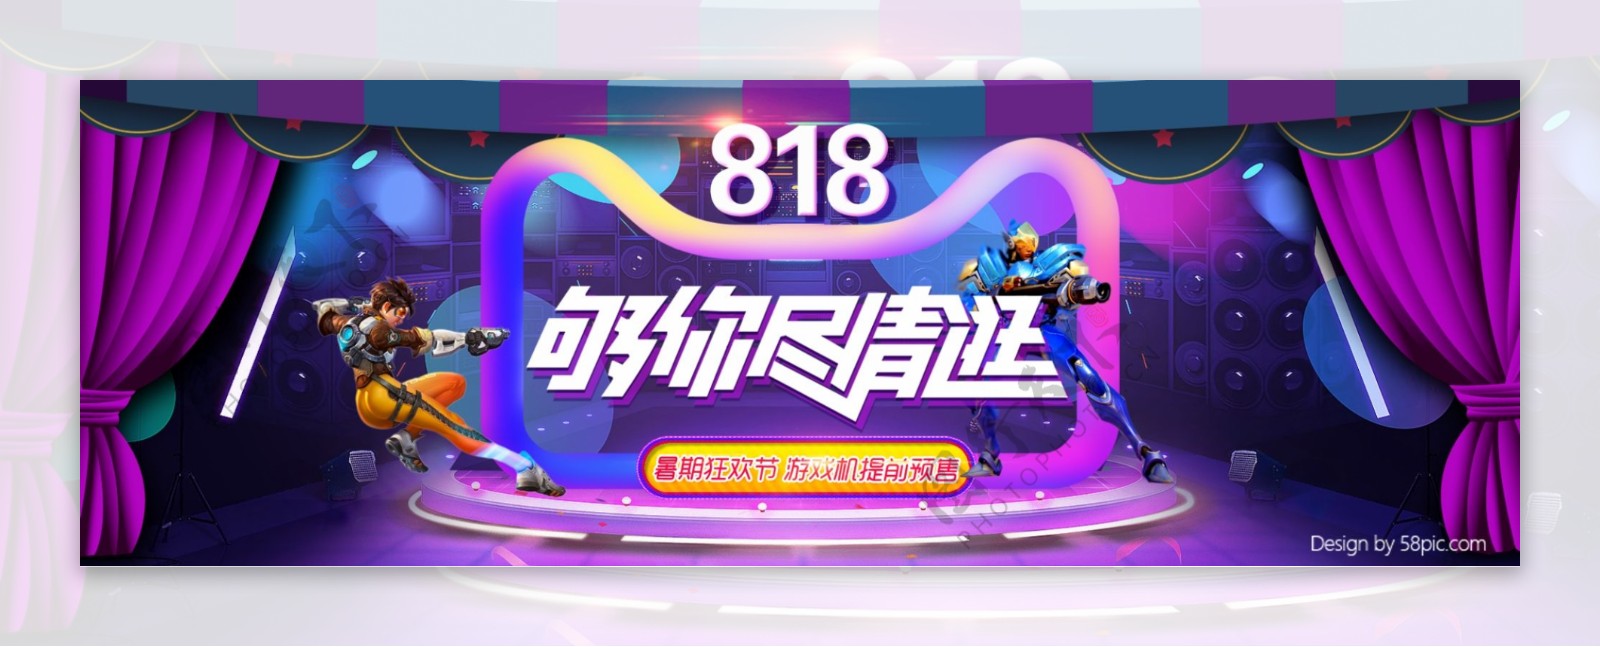 电商淘宝天猫818暑期电器狂欢节海报banner